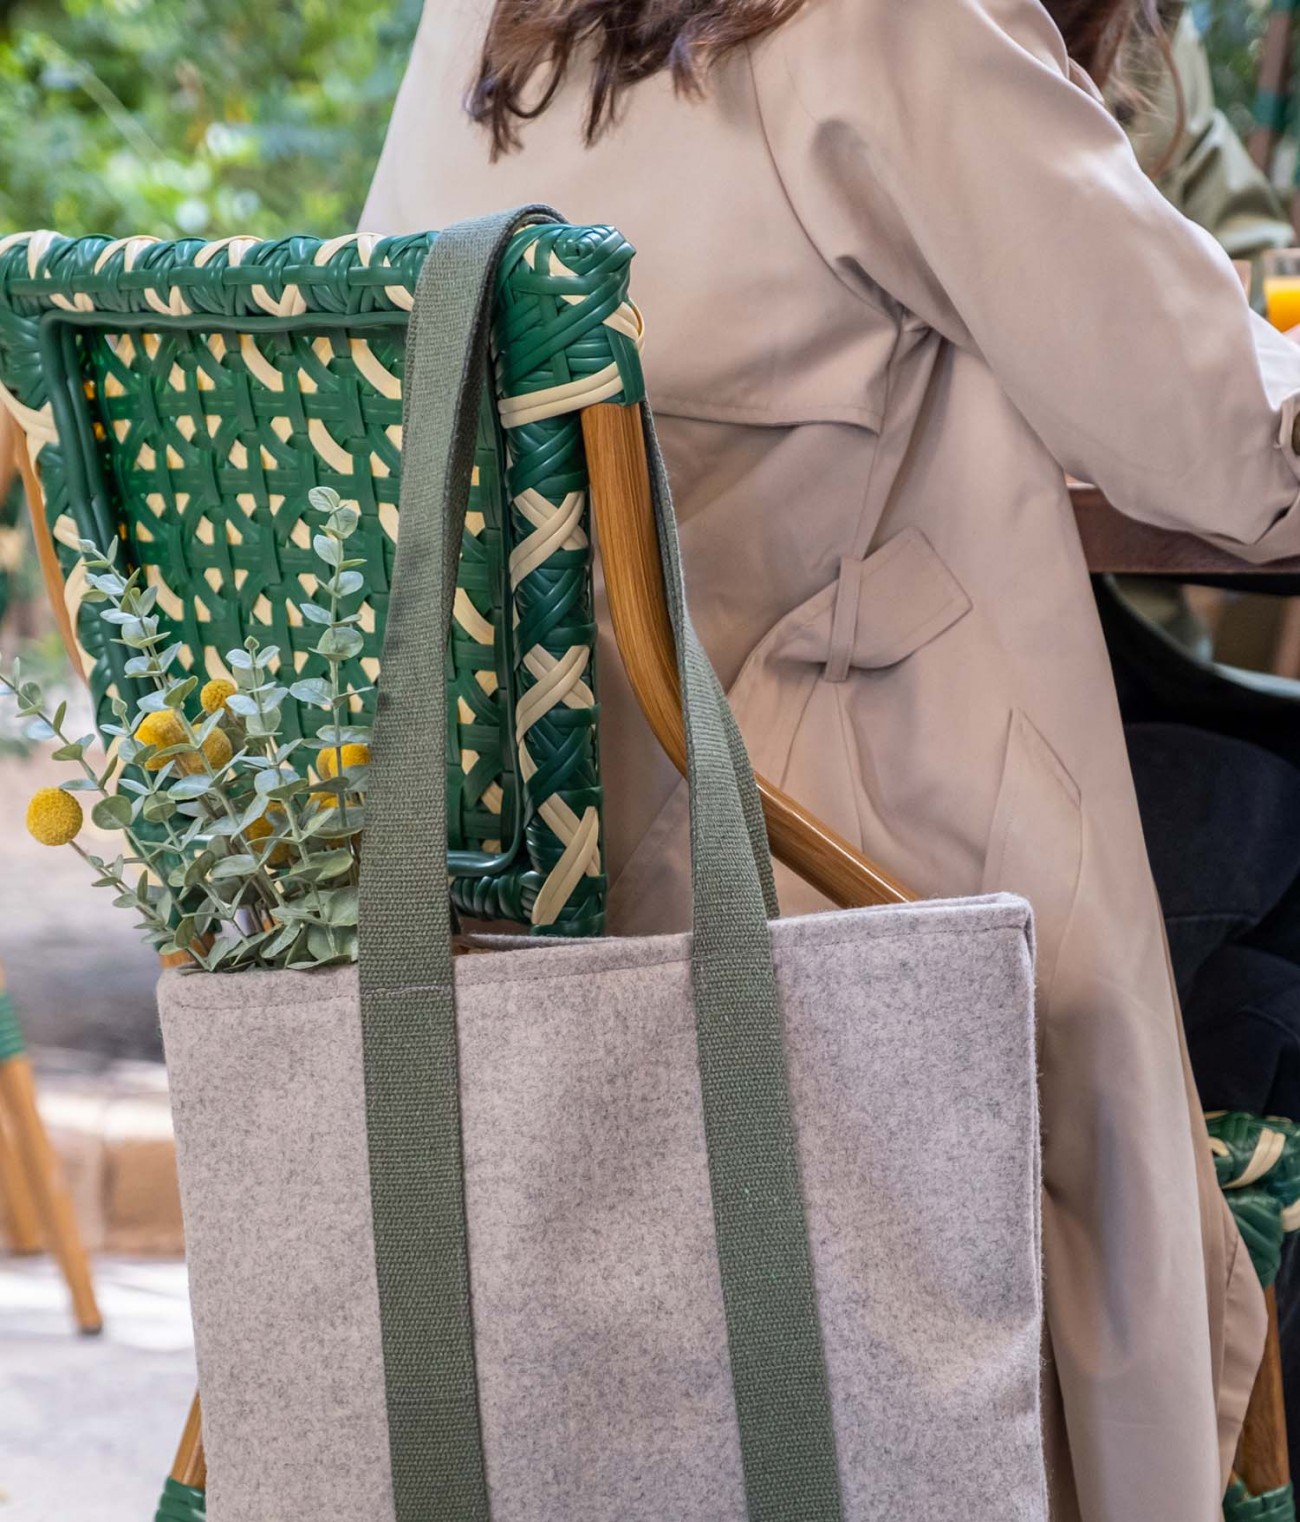 Tote bag para el día de la mujer diseño Flores, comprar online